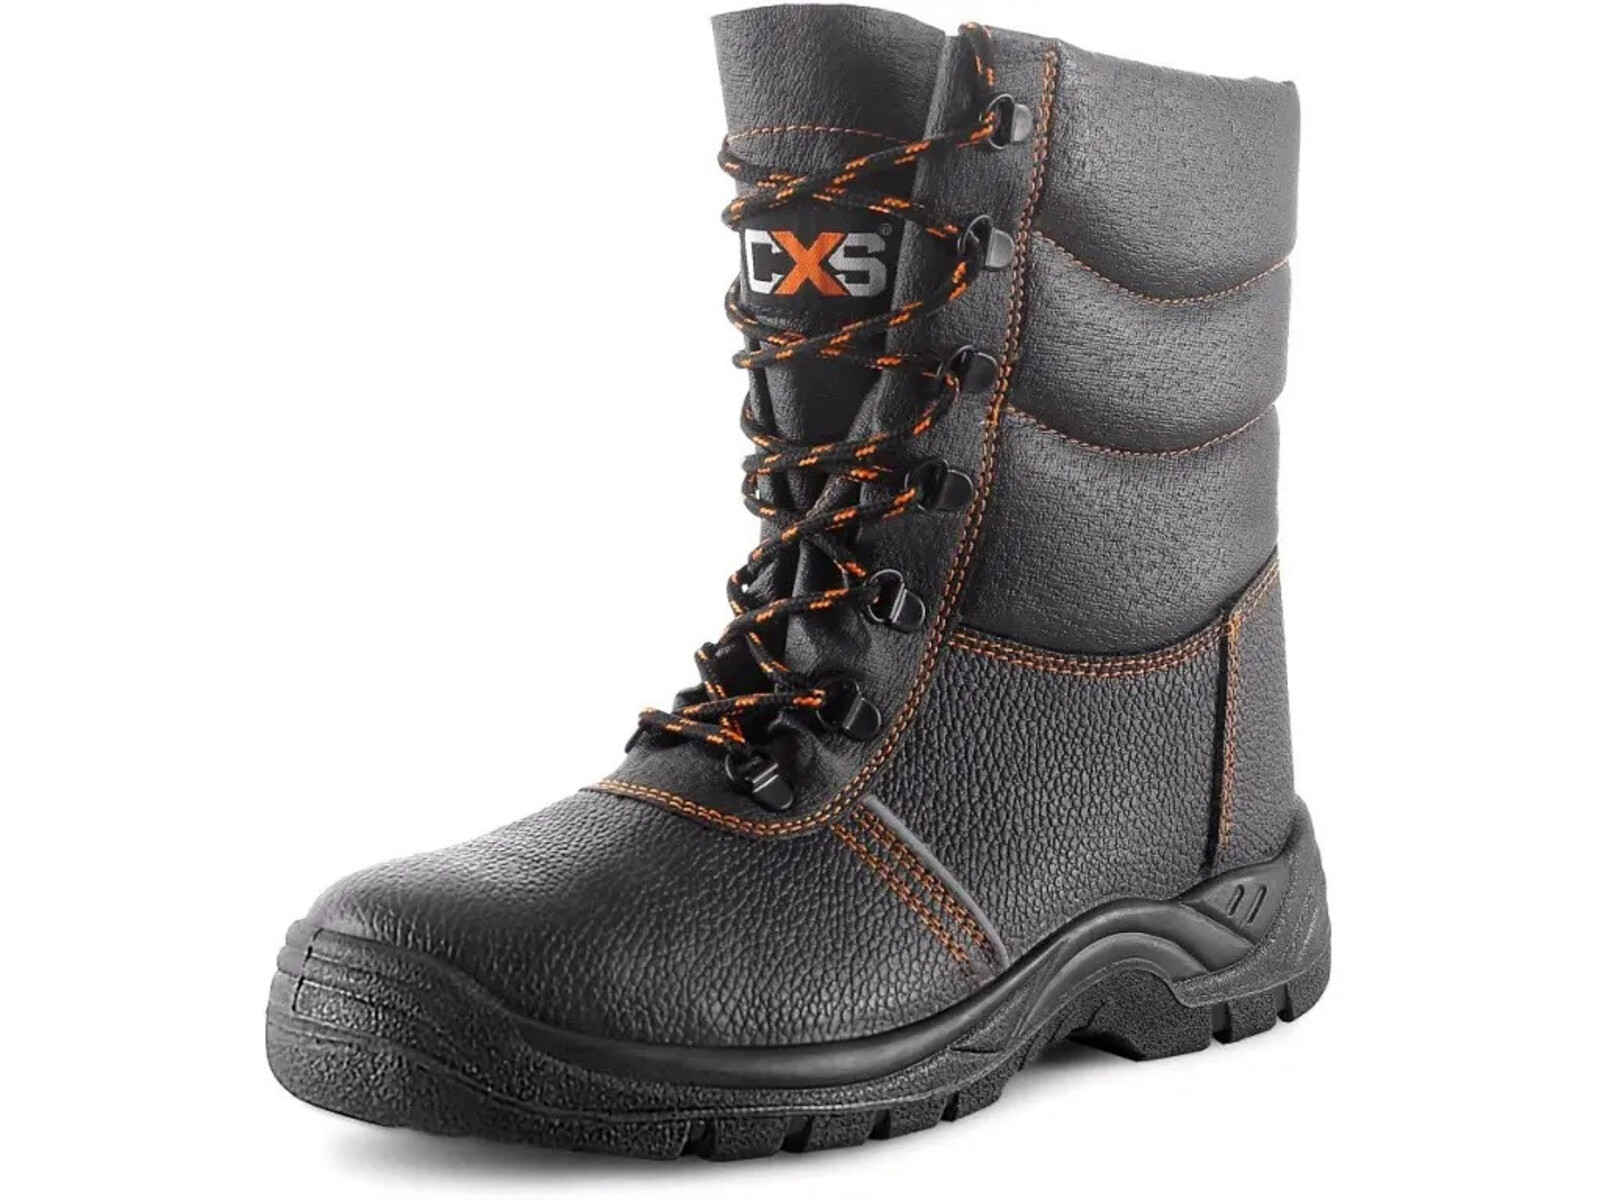 Zimná bezpečnostná poloholeňová obuv CXS Stone Topaz Winter S3 SRC - veľkosť: 46, farba: čierna/oranžová